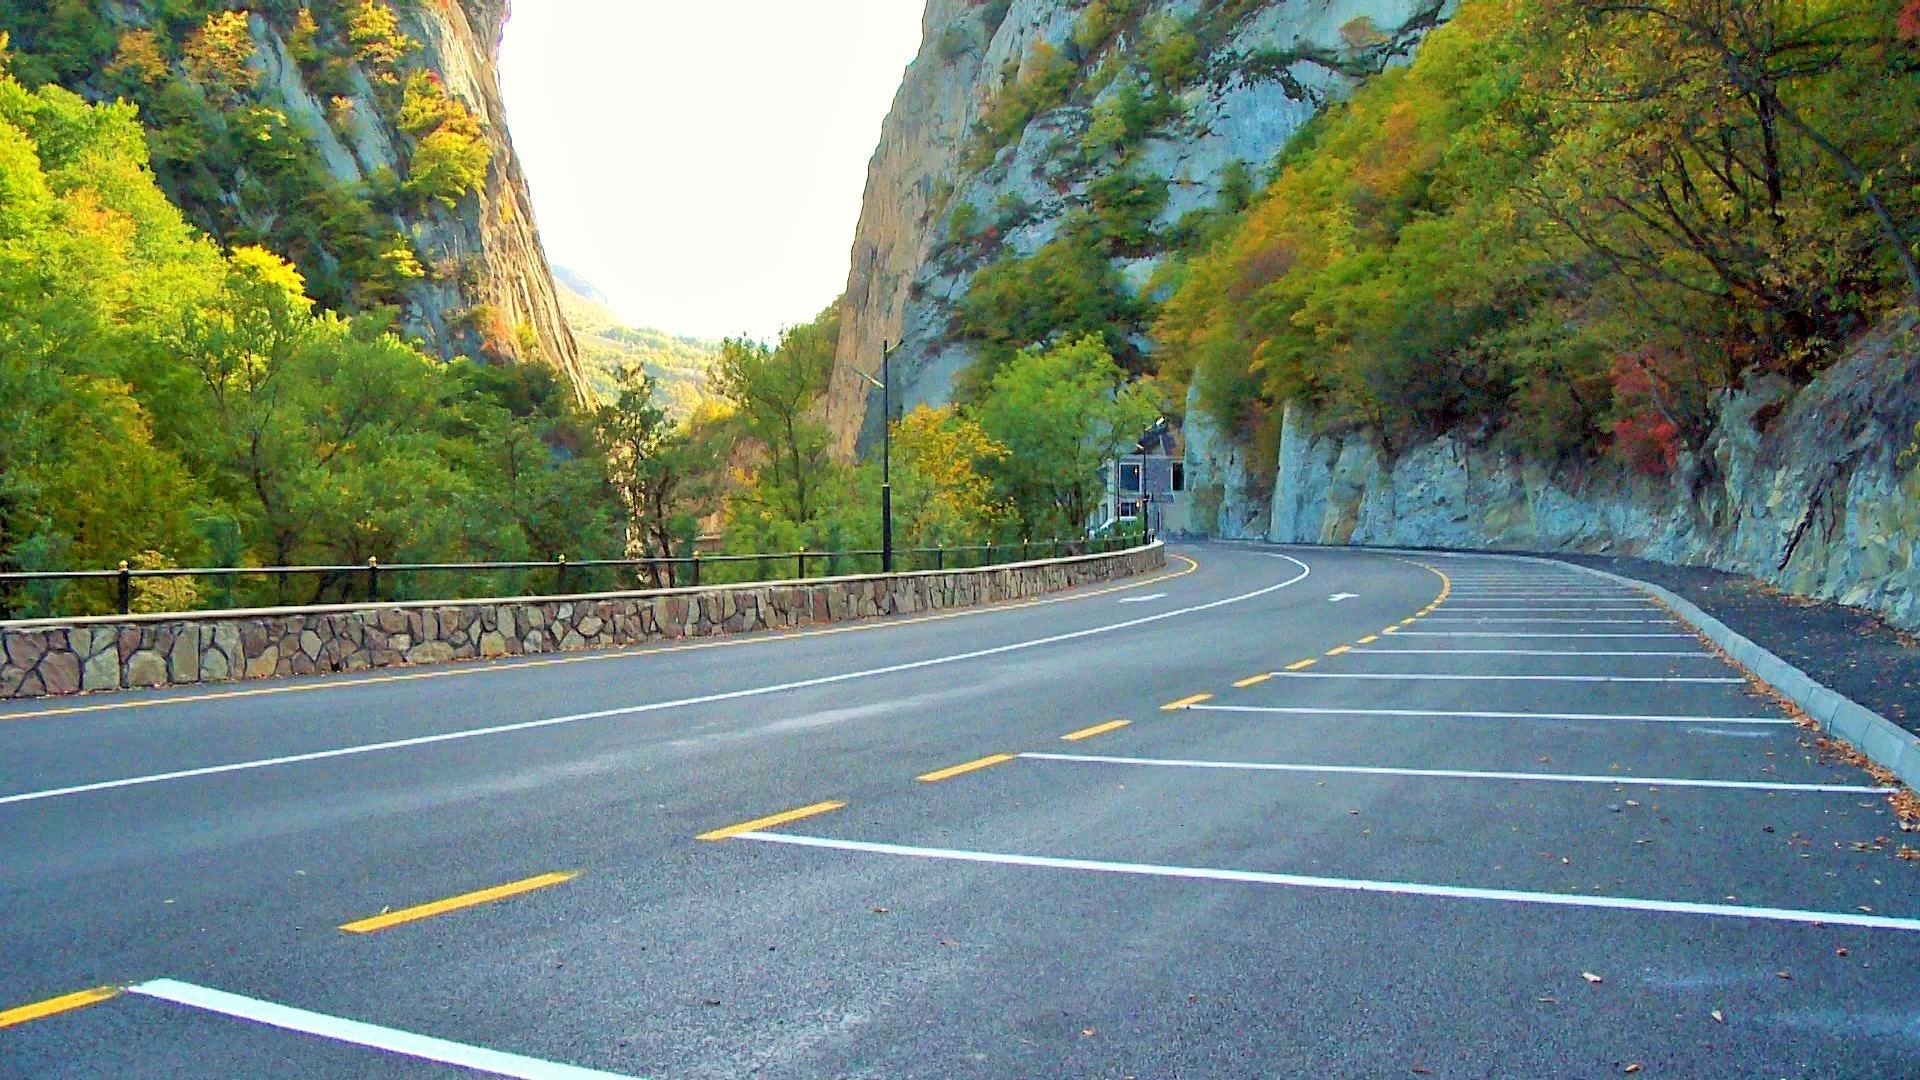 Завершена реконструкция автомобильной дороги Губа-Гонагкенд (ФОТО/ВИДЕО)